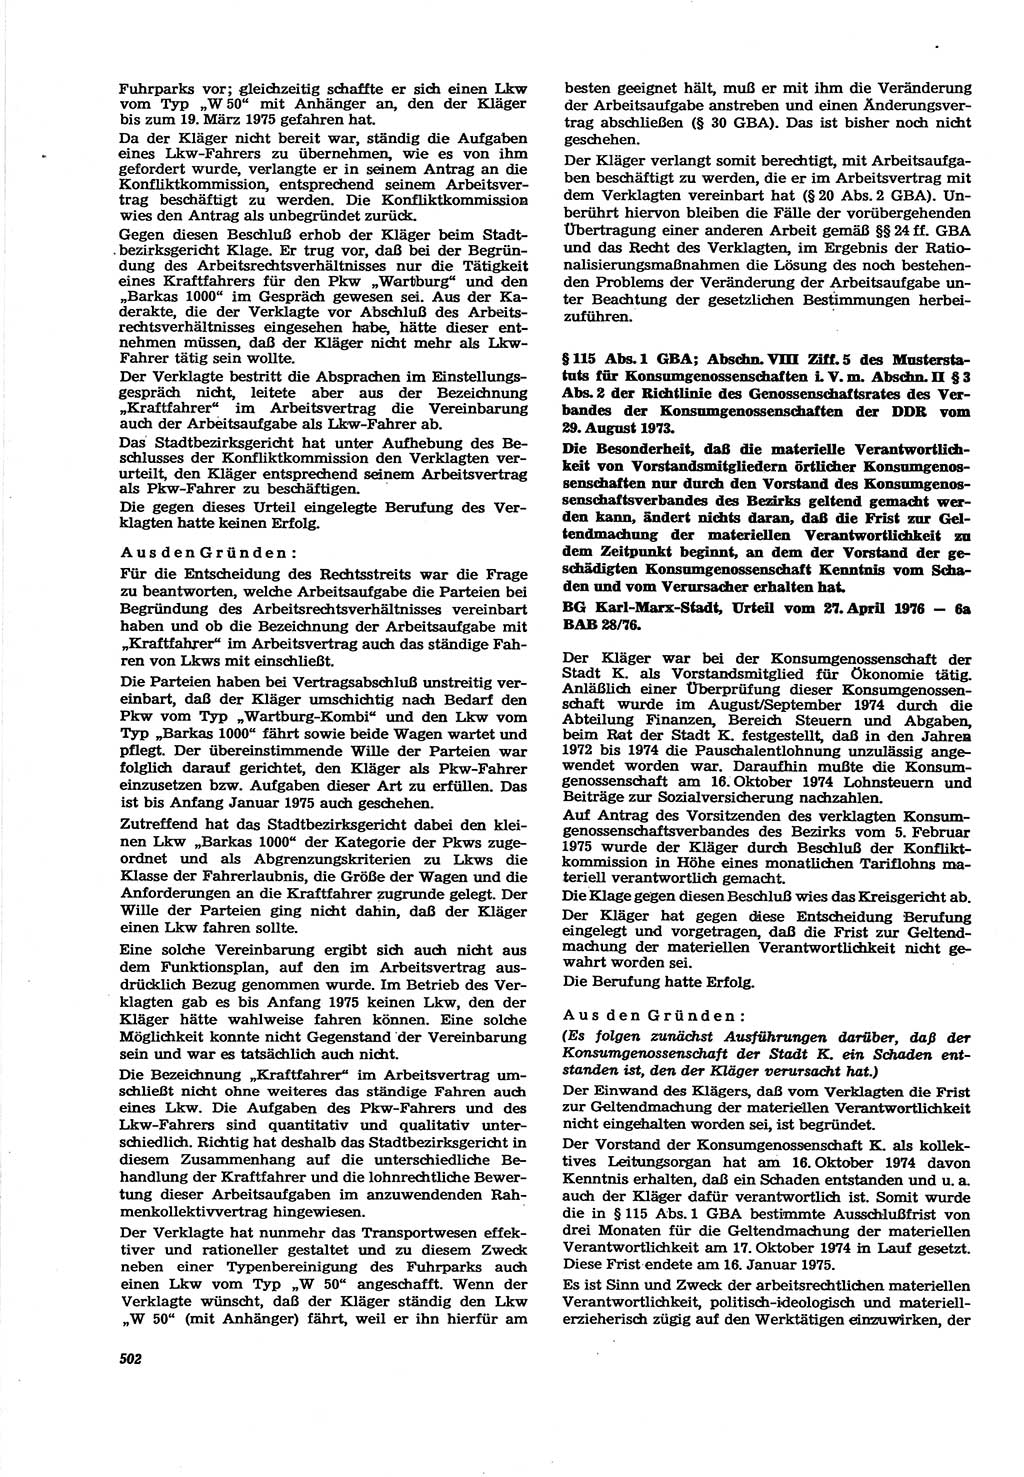 Neue Justiz (NJ), Zeitschrift für Recht und Rechtswissenschaft [Deutsche Demokratische Republik (DDR)], 30. Jahrgang 1976, Seite 502 (NJ DDR 1976, S. 502)